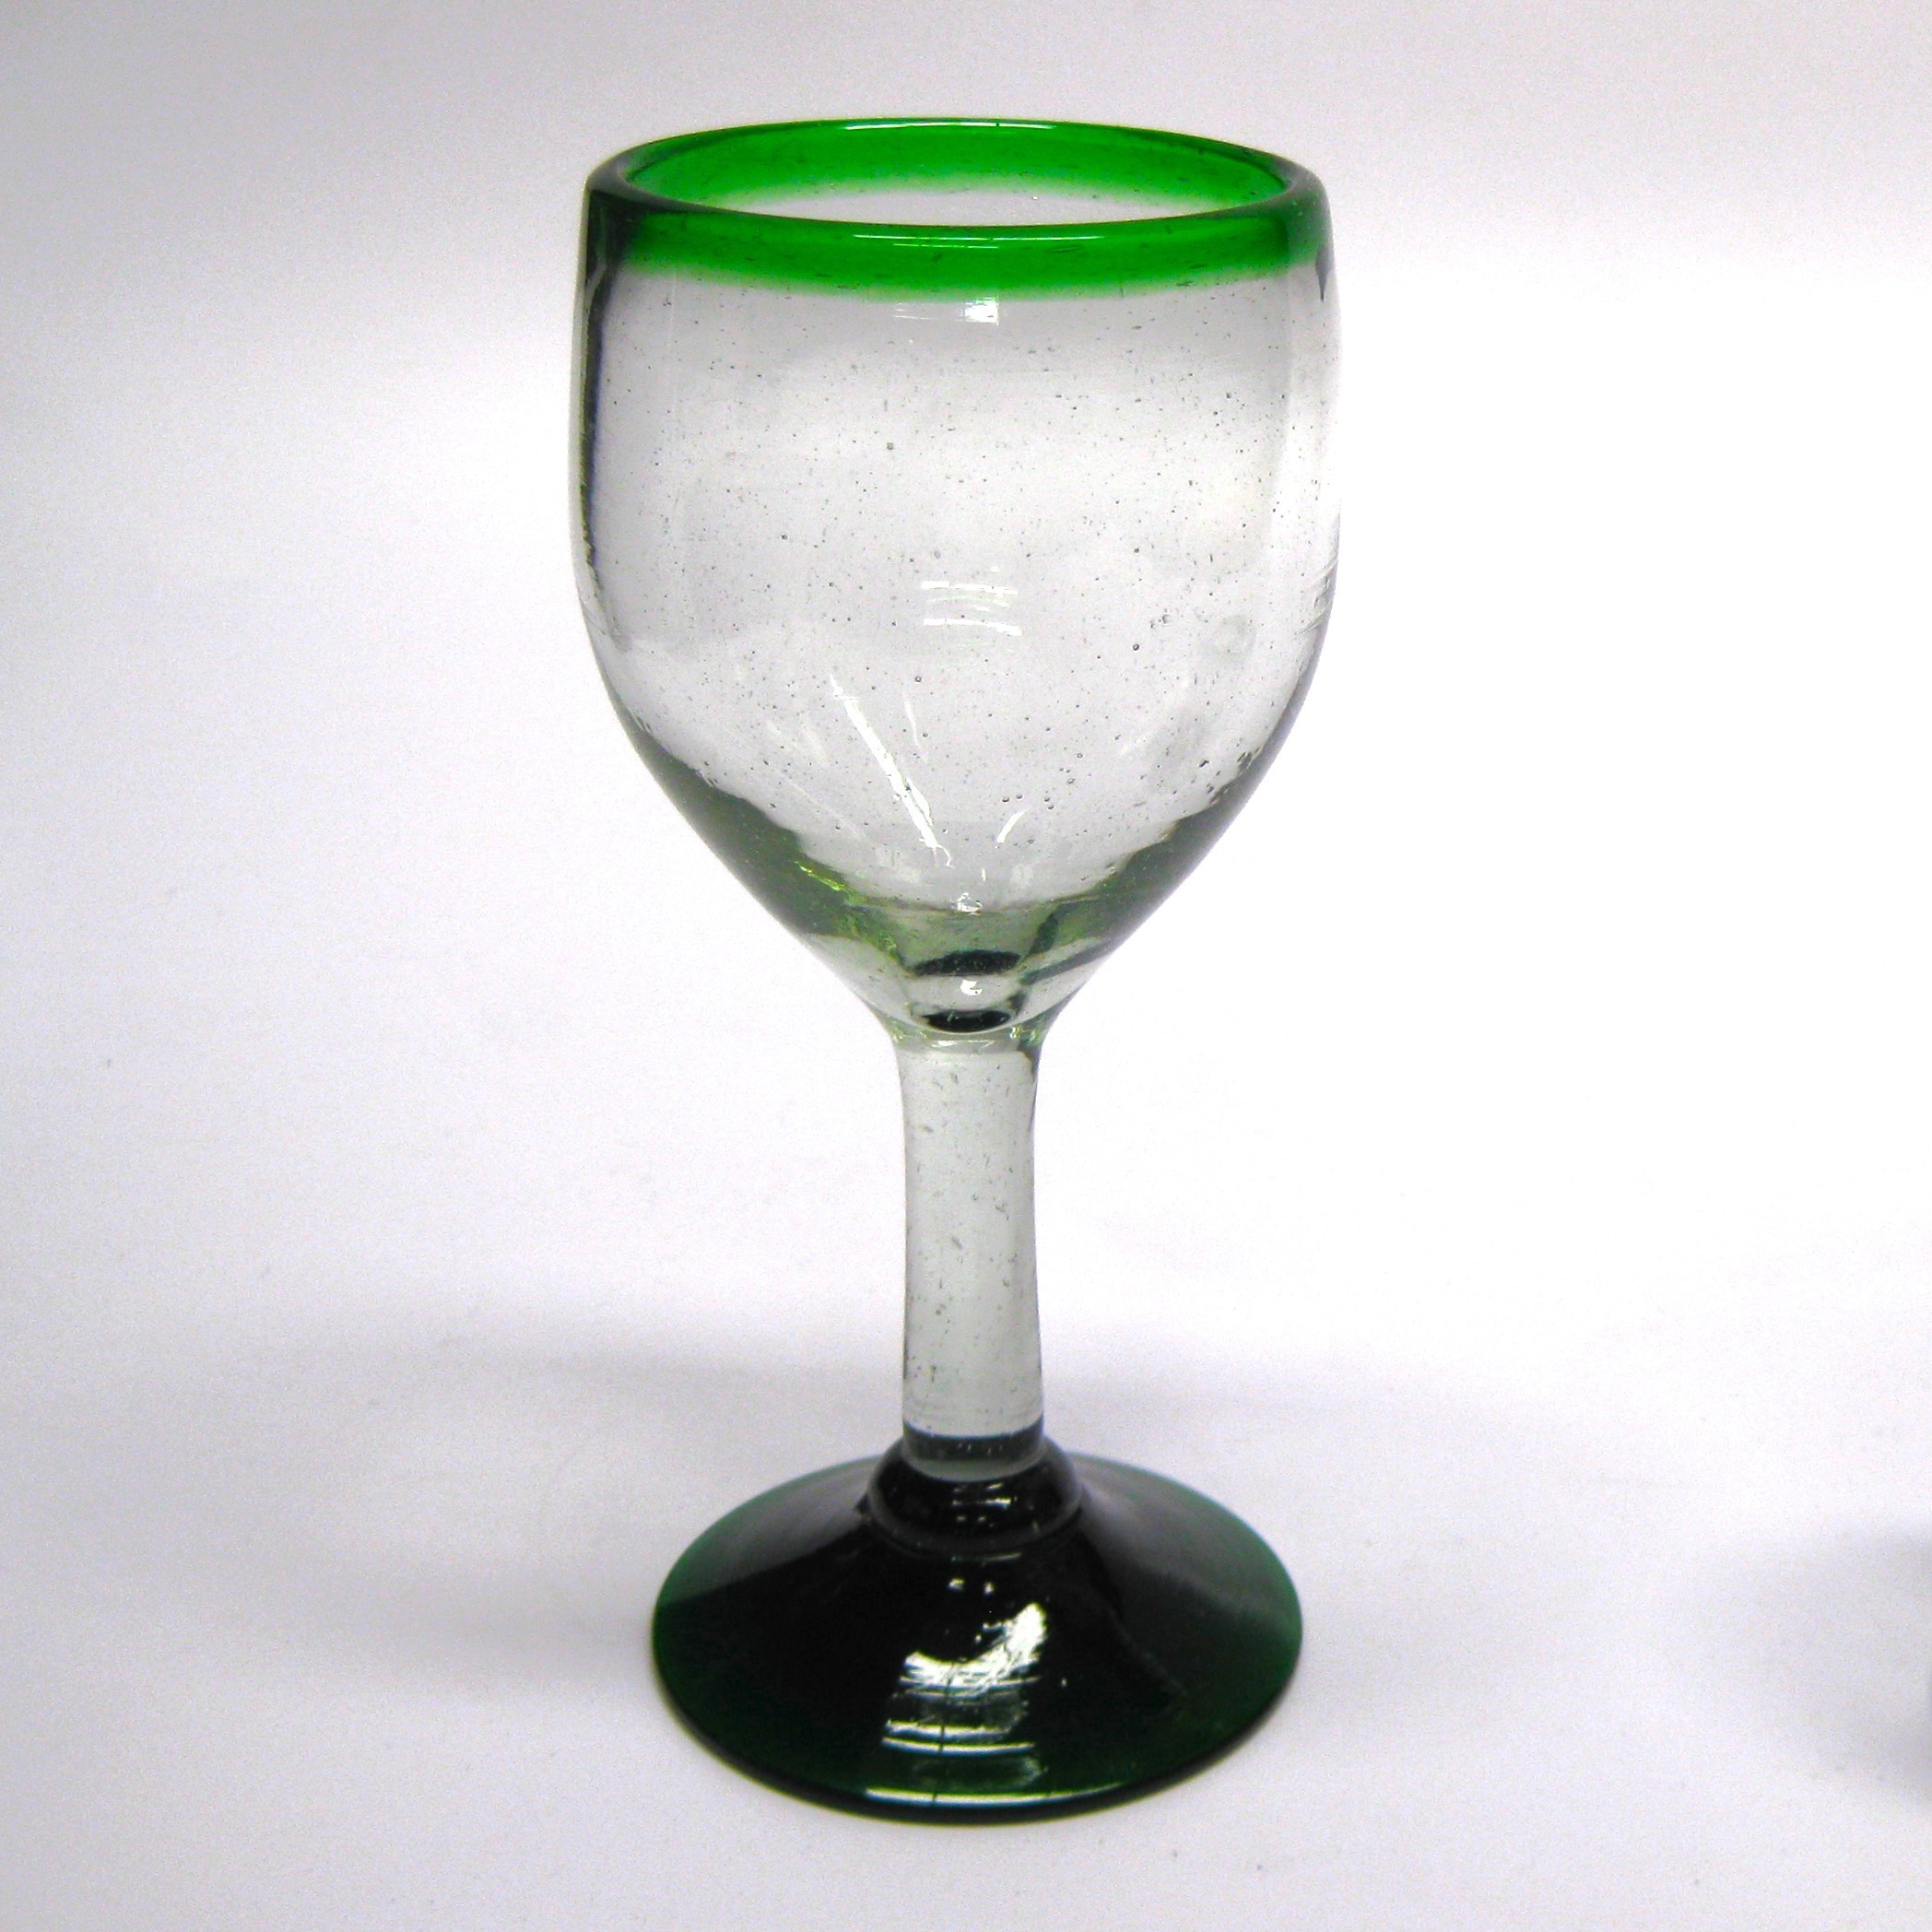 copas para vino pequeas con borde verde esmeralda, 7 oz, Vidrio Reciclado, Libre de Plomo y Toxinas